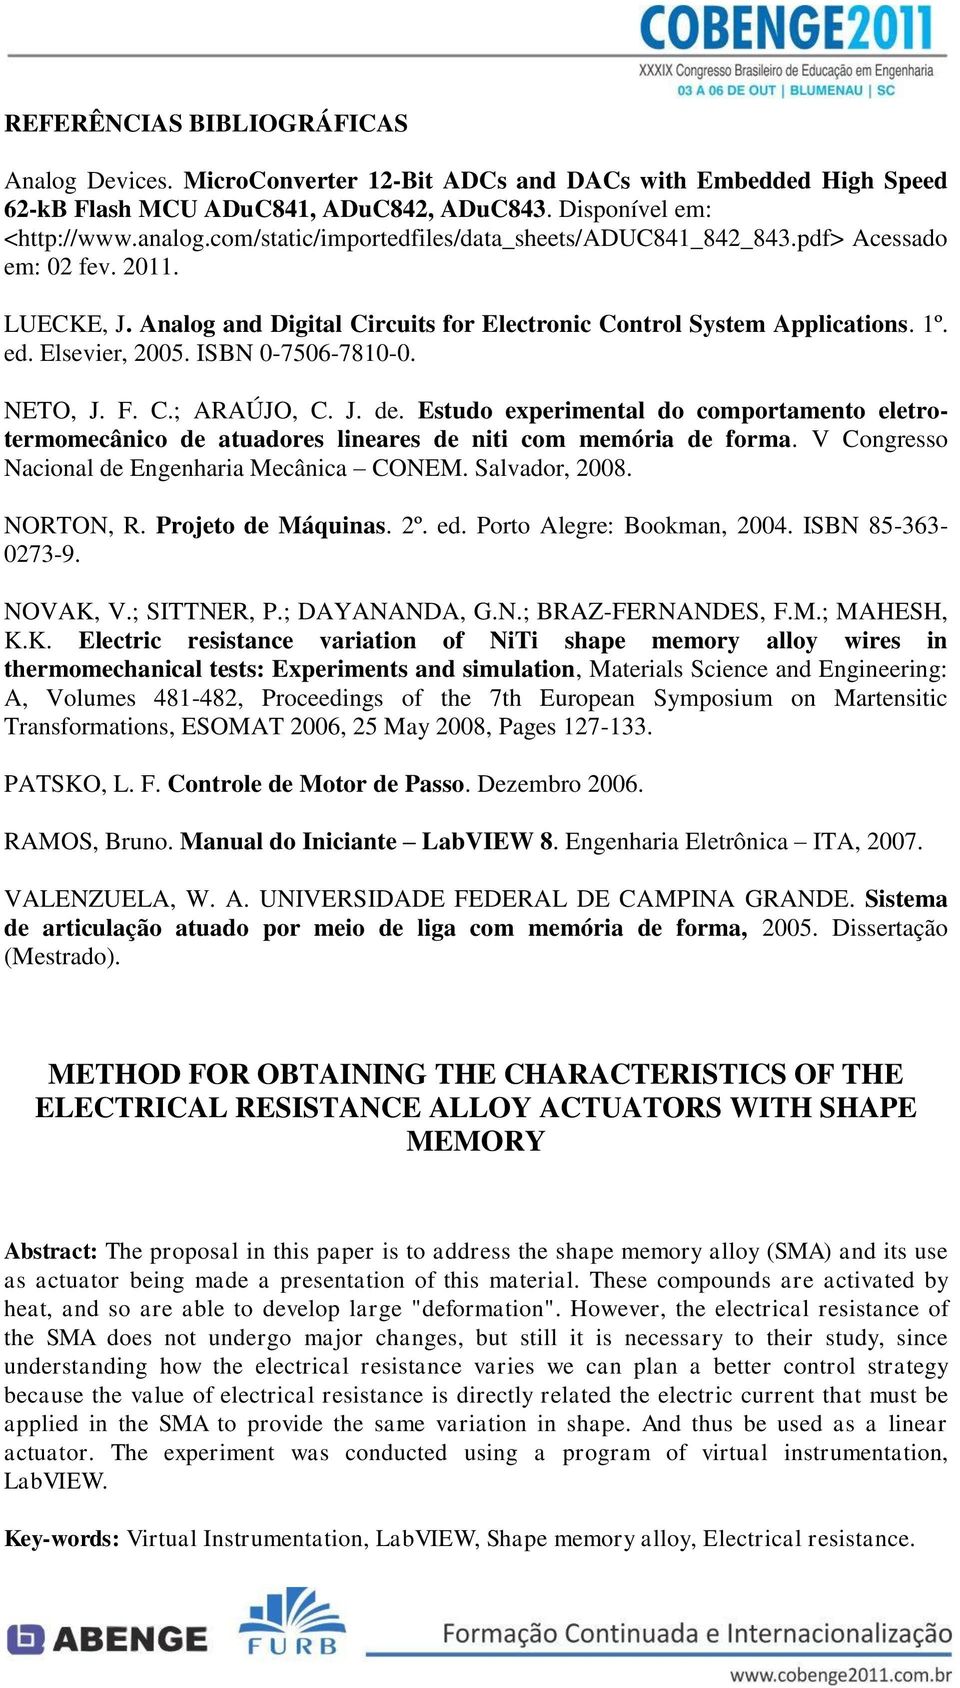 ISBN 0-7506-7810-0. NETO, J. F. C.; ARAÚJO, C. J. de. Estudo experimental do comportamento eletrotermomecânico de atuadores lineares de niti com memória de forma.